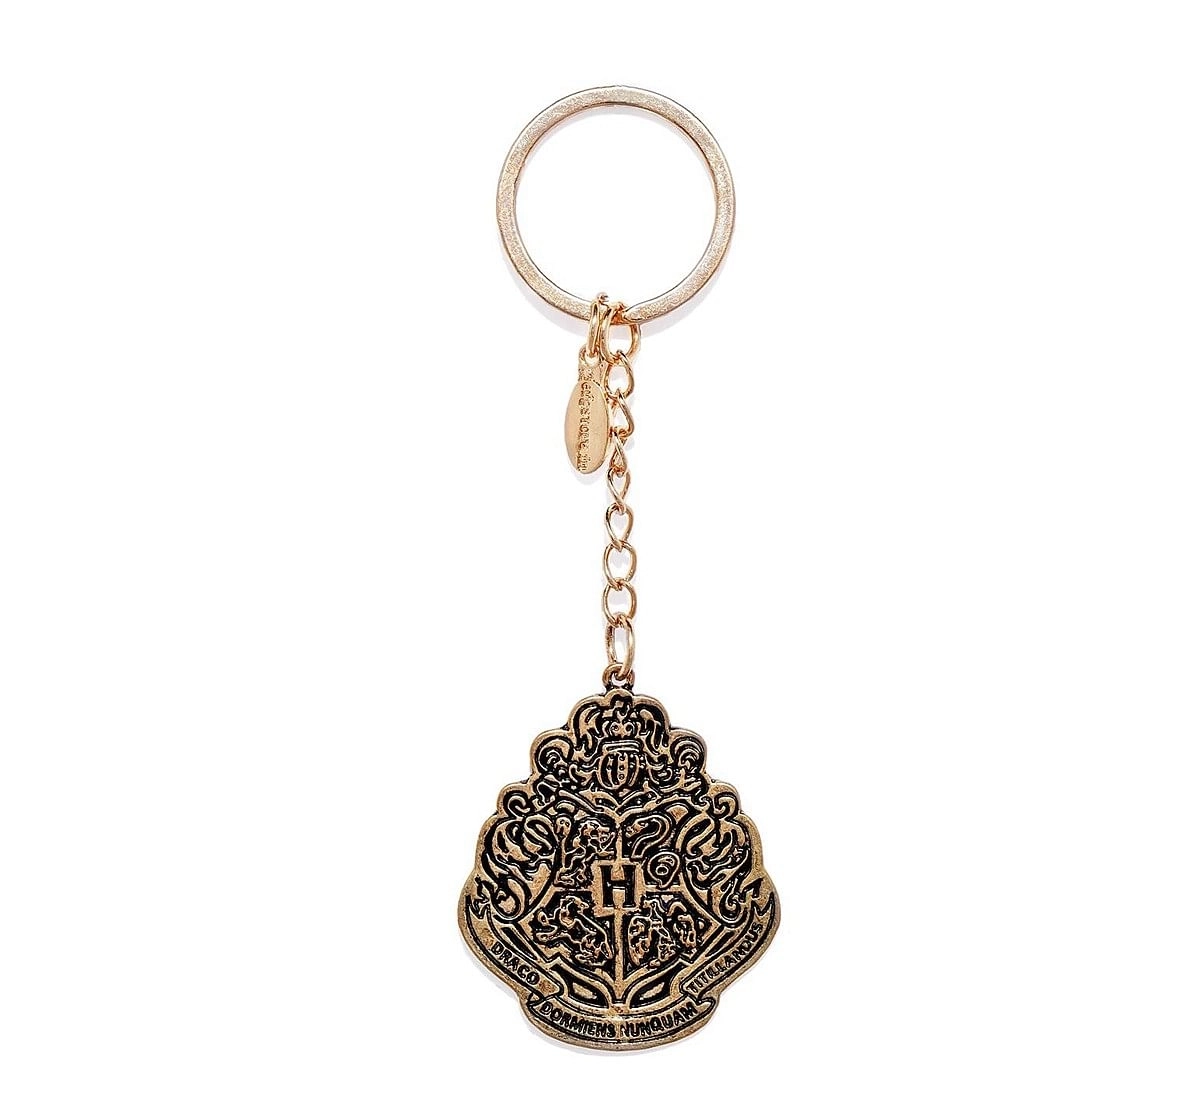 Efg Harry Potter Hogwarts Crest Keychain for Kids age 3Y+ (Antique Gold)